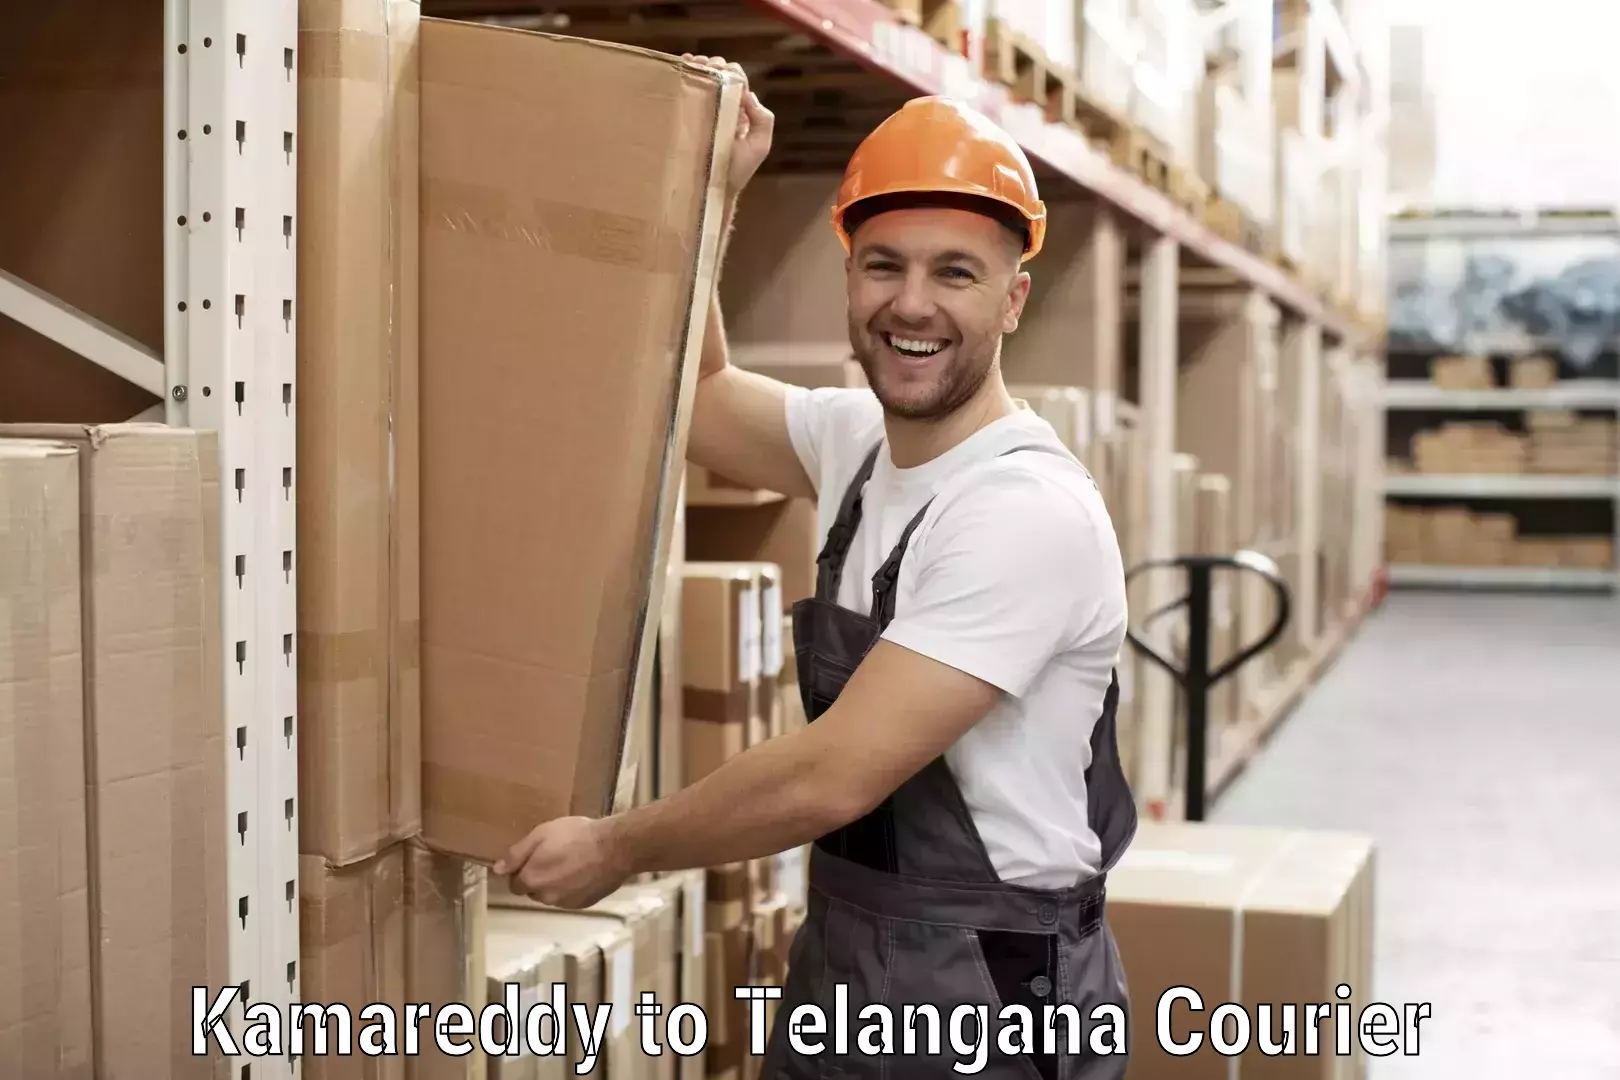 Courier insurance Kamareddy to Balanagar